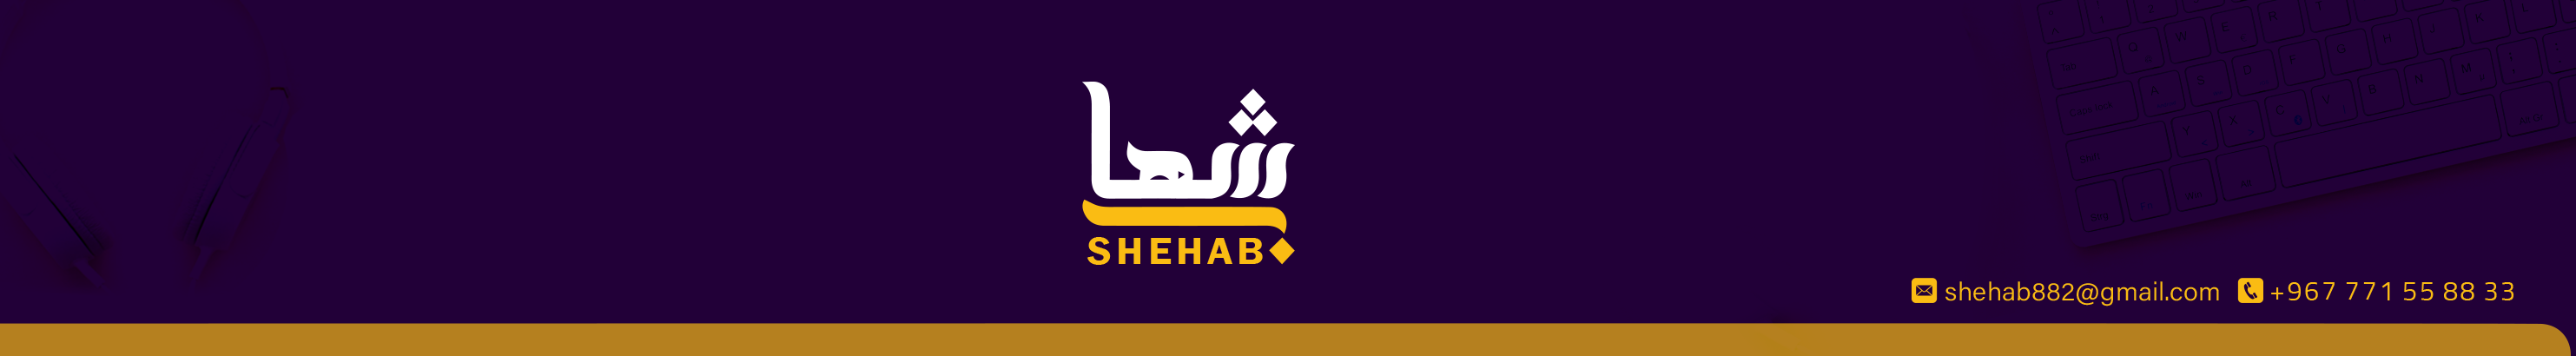 shehab aljrash's profile banner